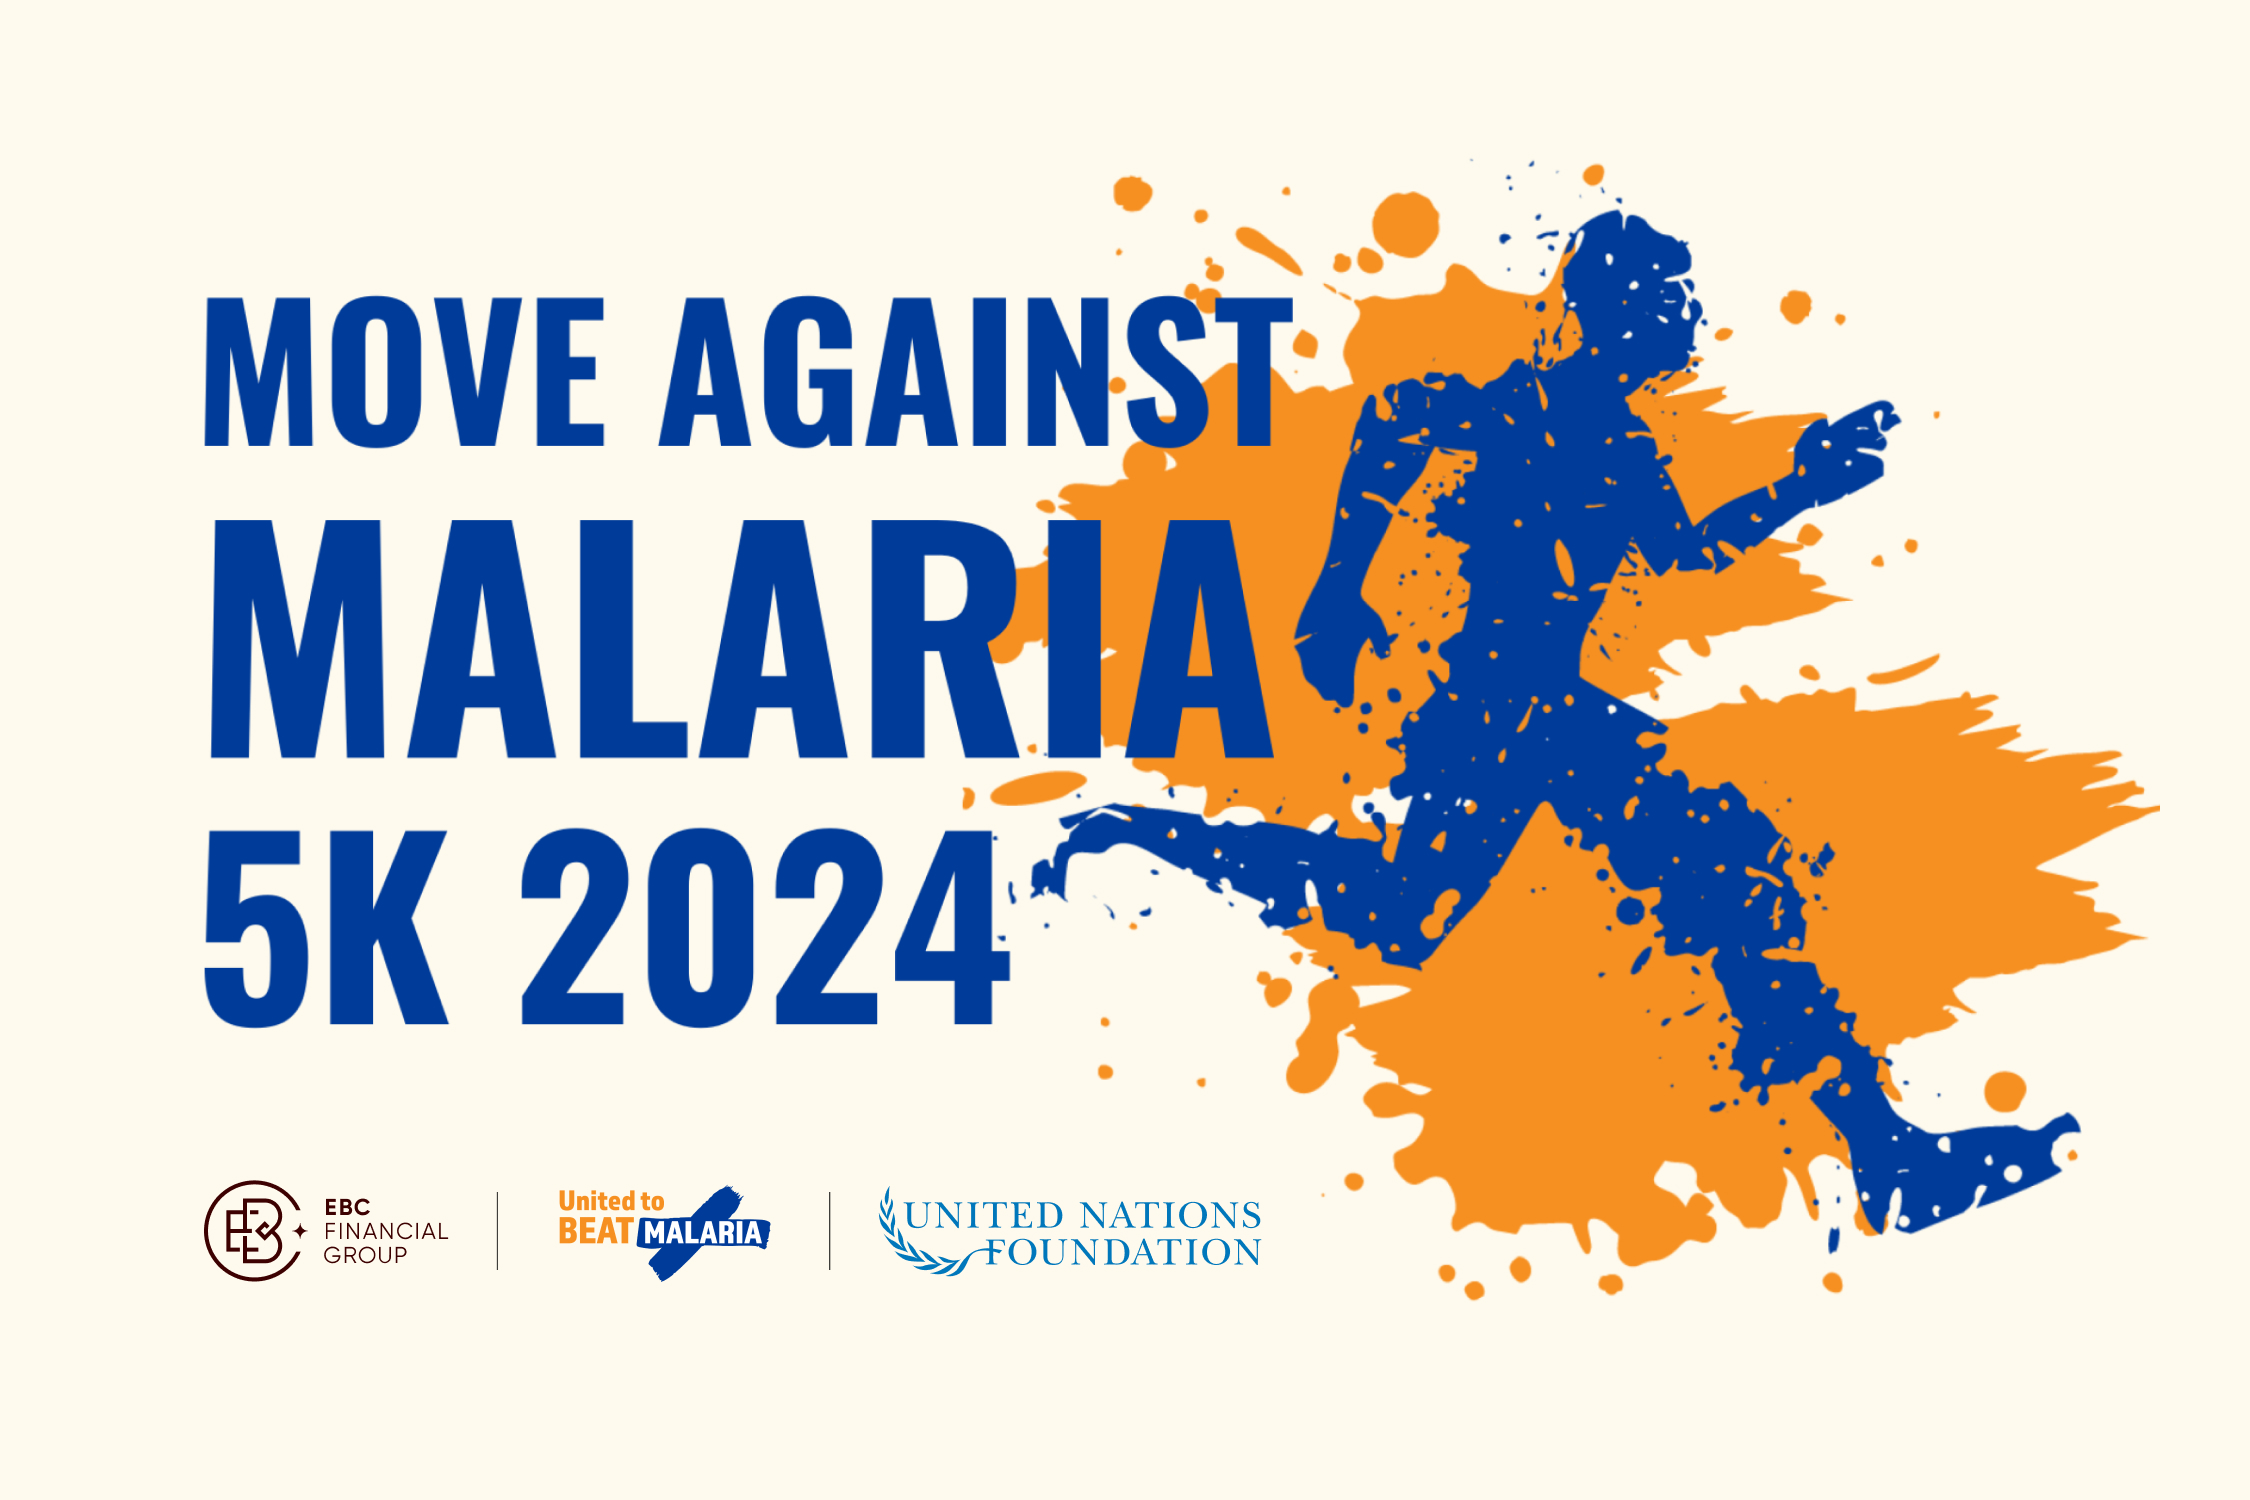 Entre 25 de abril e 5 de maio de 2024, junte-se aos apoiadores de todo o mundo no Movimento Contra a Malária, um evento virtual para aumentar a conscientização e os fundos para apoiar ferramentas e programas de tratamento da malária que salvam vidas.